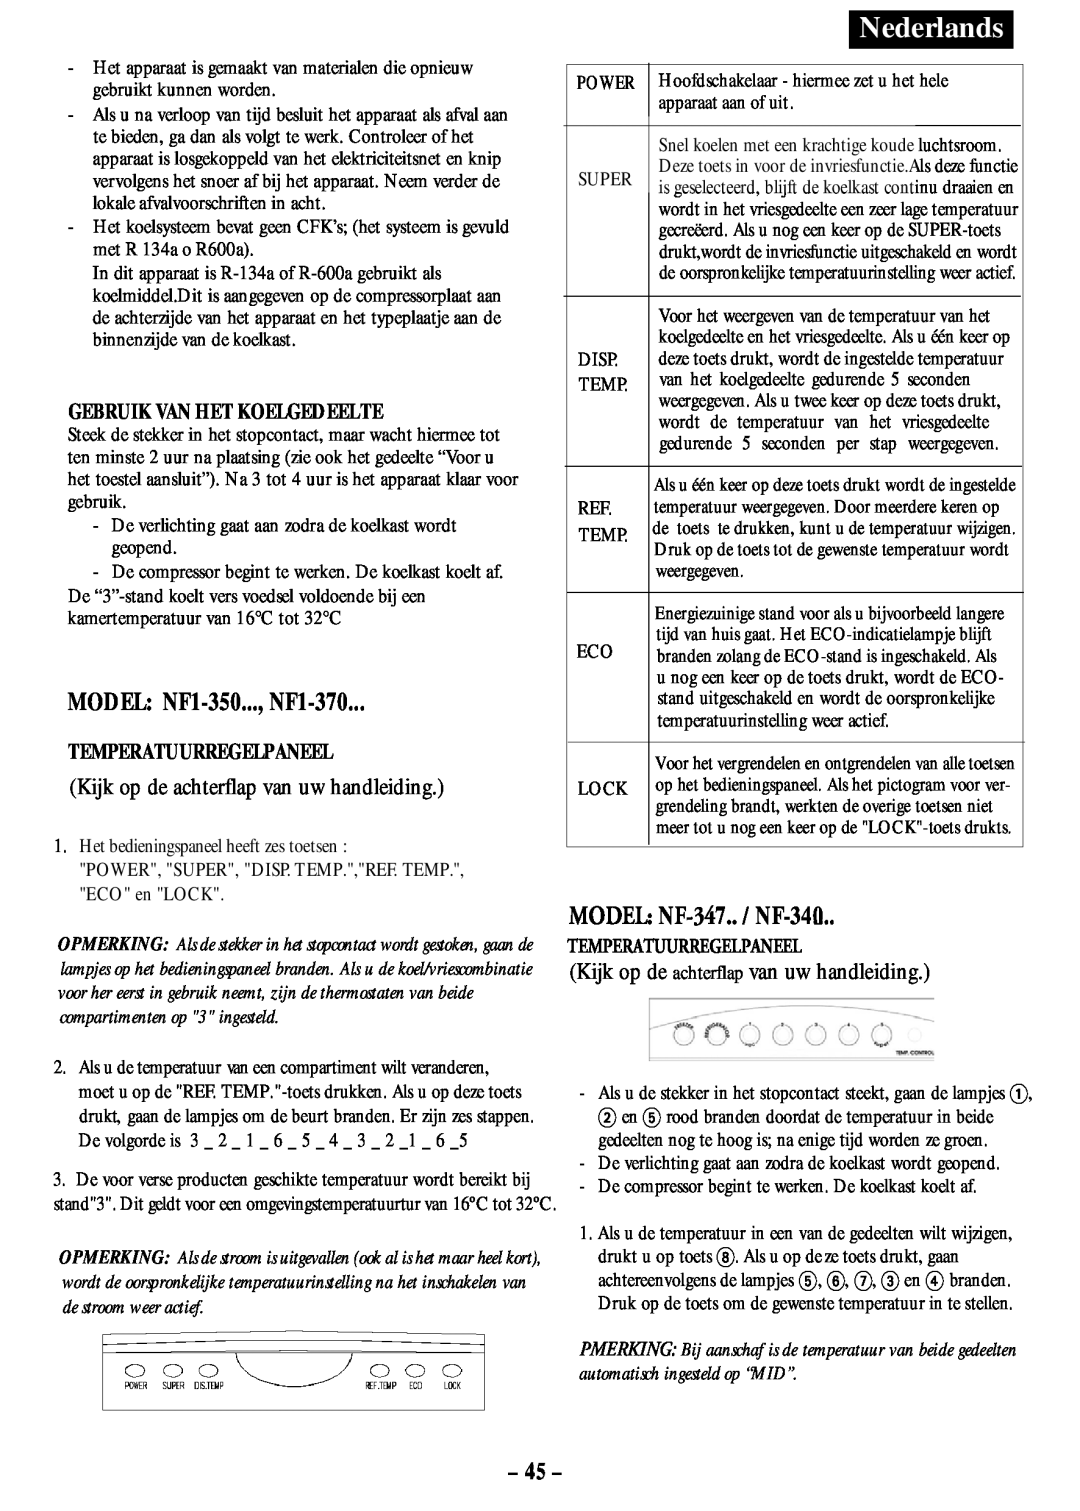 Opteka manual MODEL: NF1-350..., NF1-370, MODEL: NF-347.. / NF-340, 45, Nederlands, Gebruik Van Het Koelgedeelte 